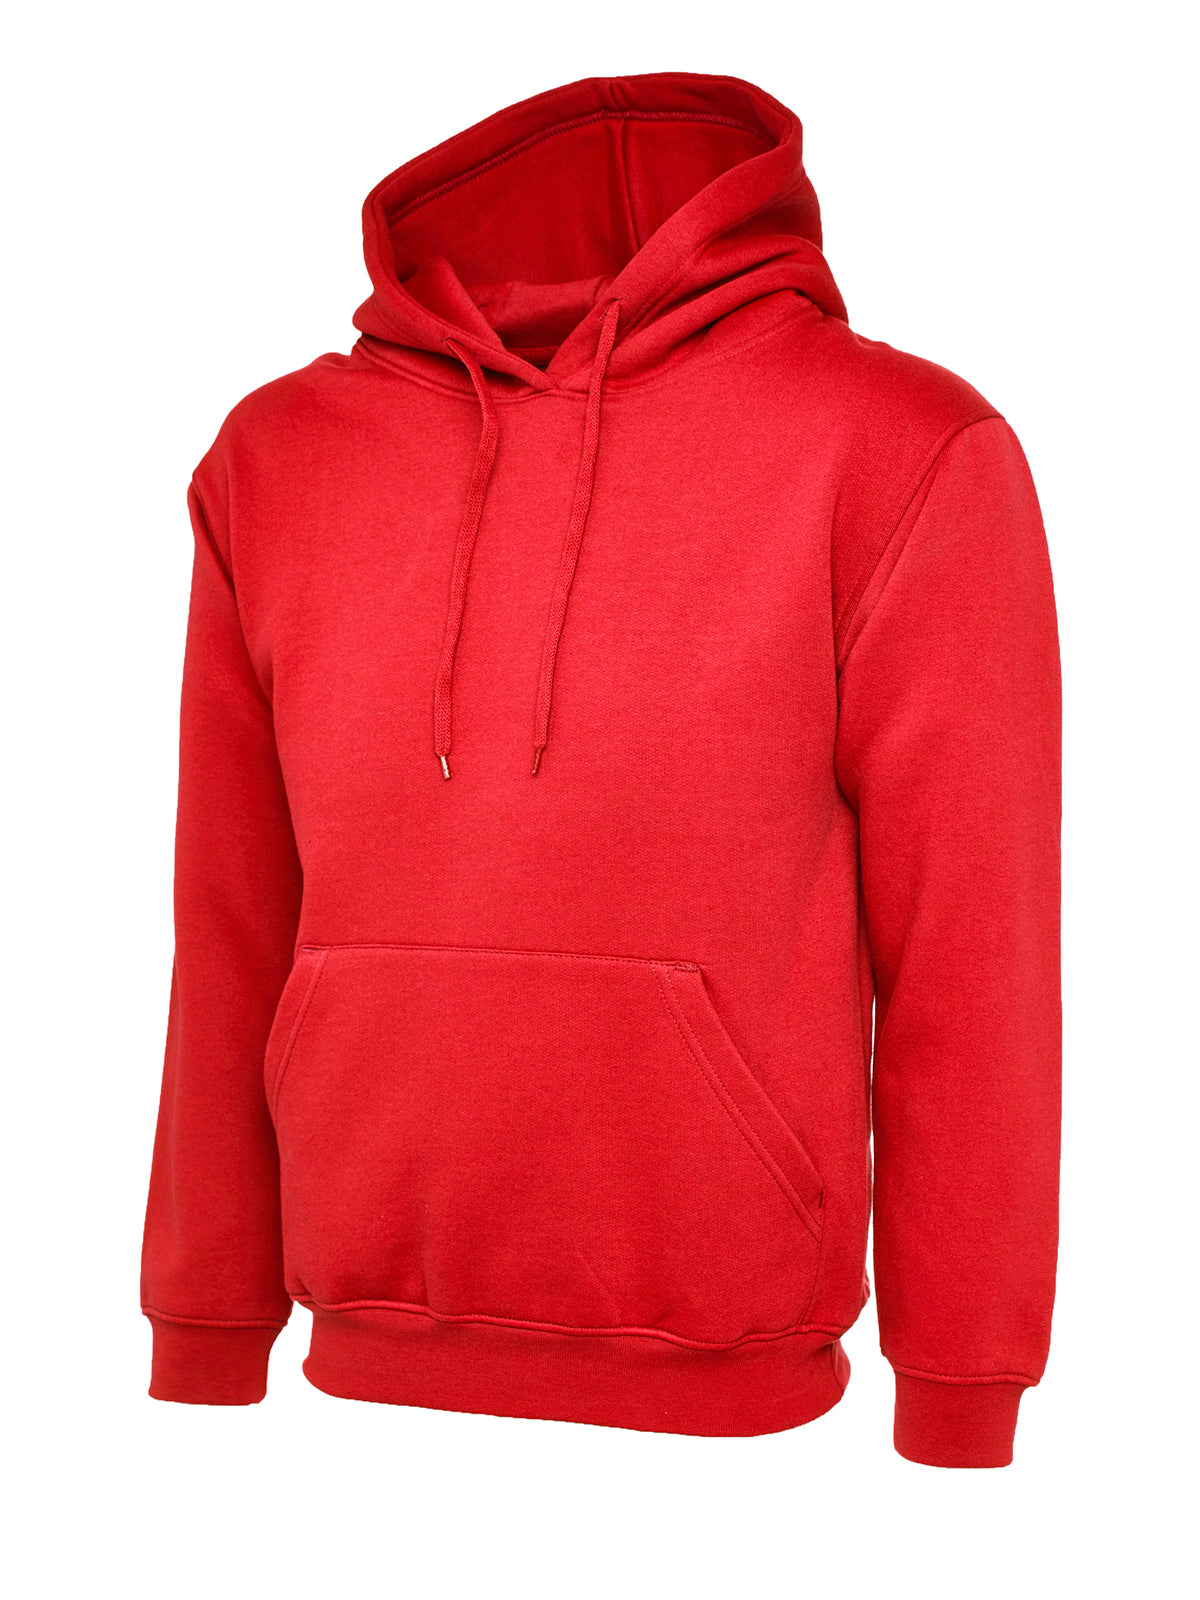 Uneek Classic Hoodie Sweatshirt - Red